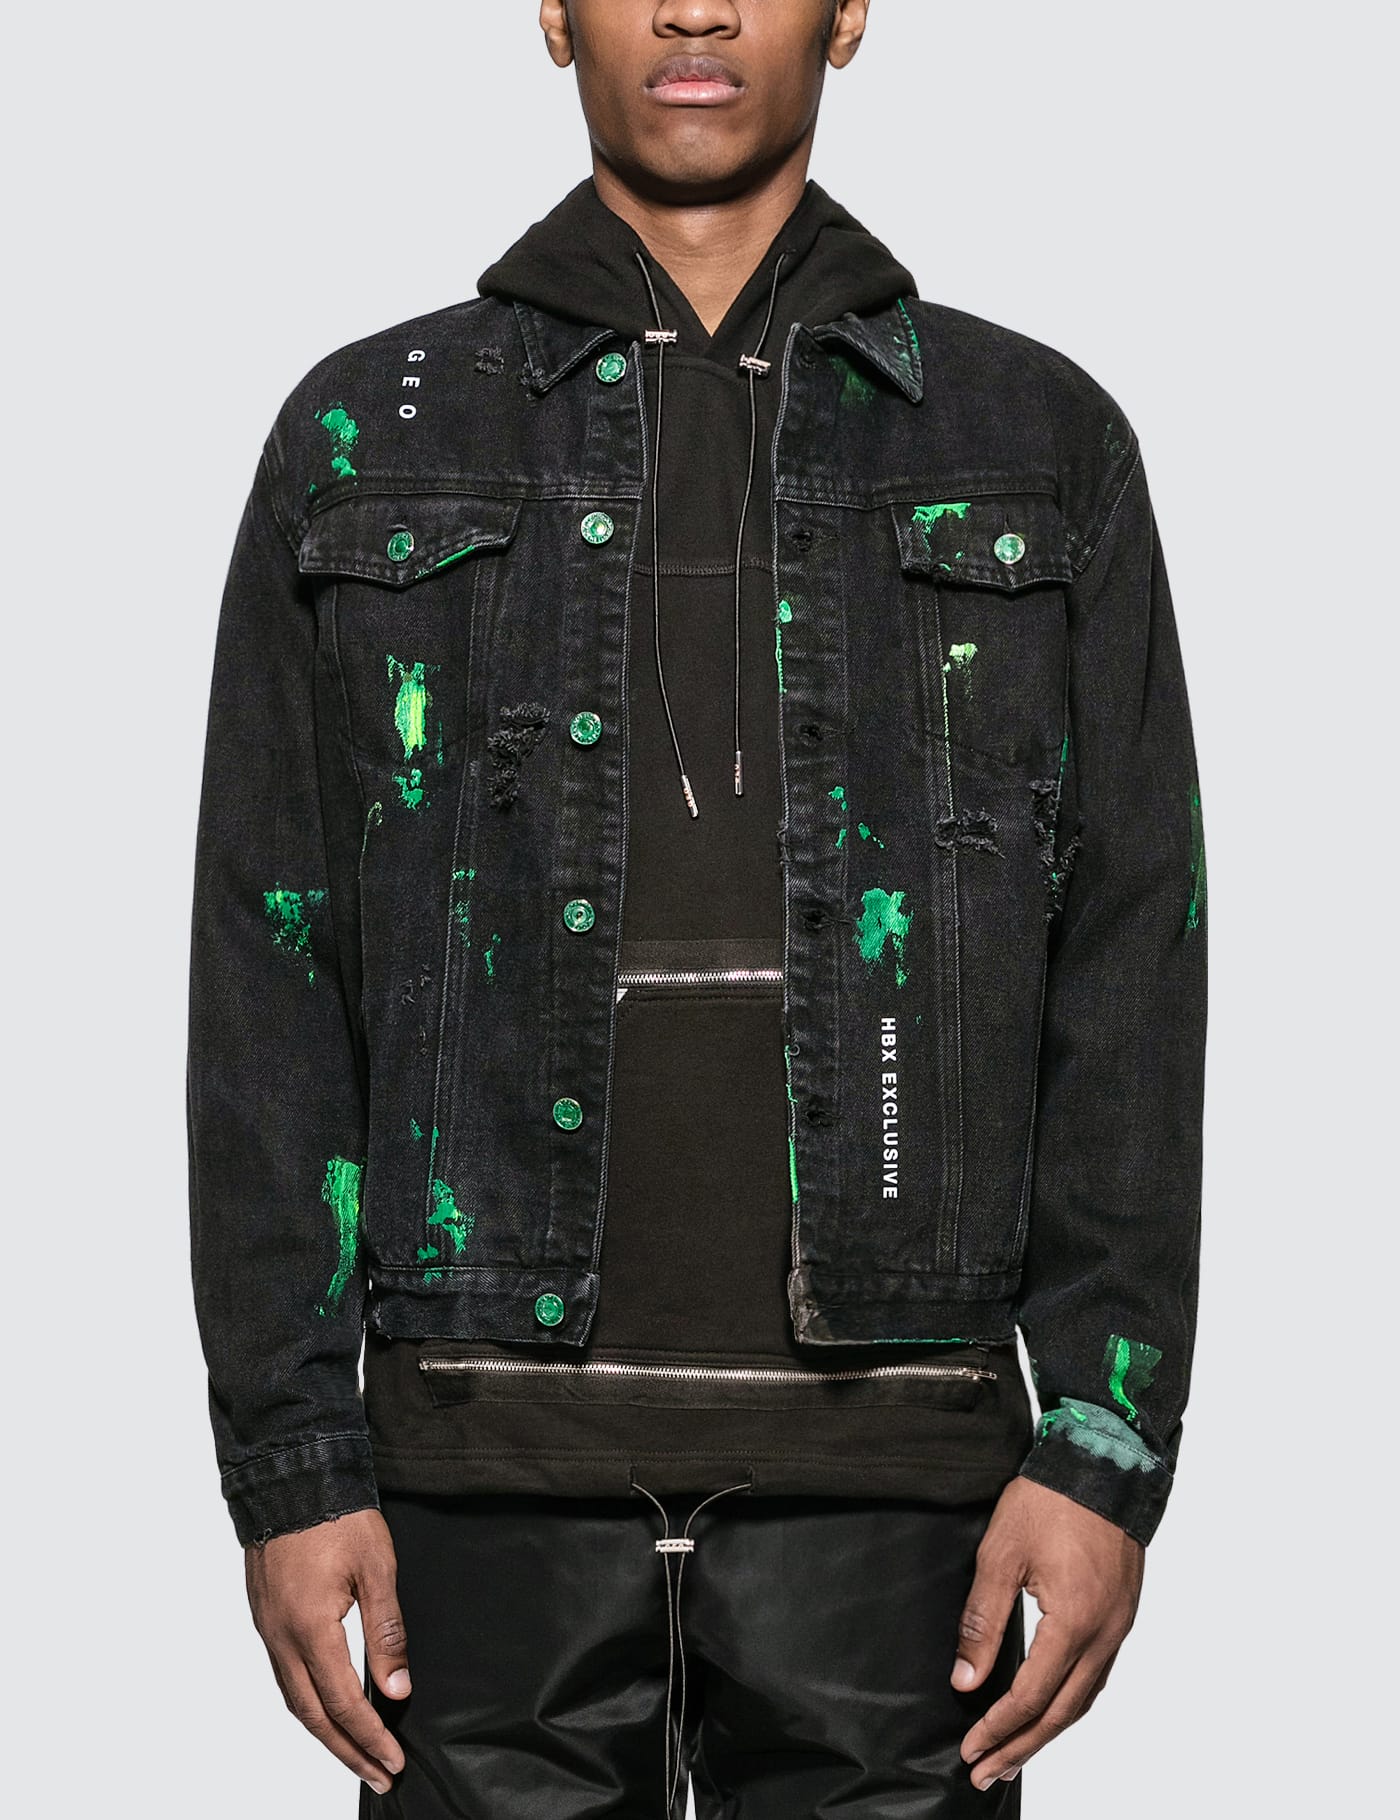 jean jacket personalized